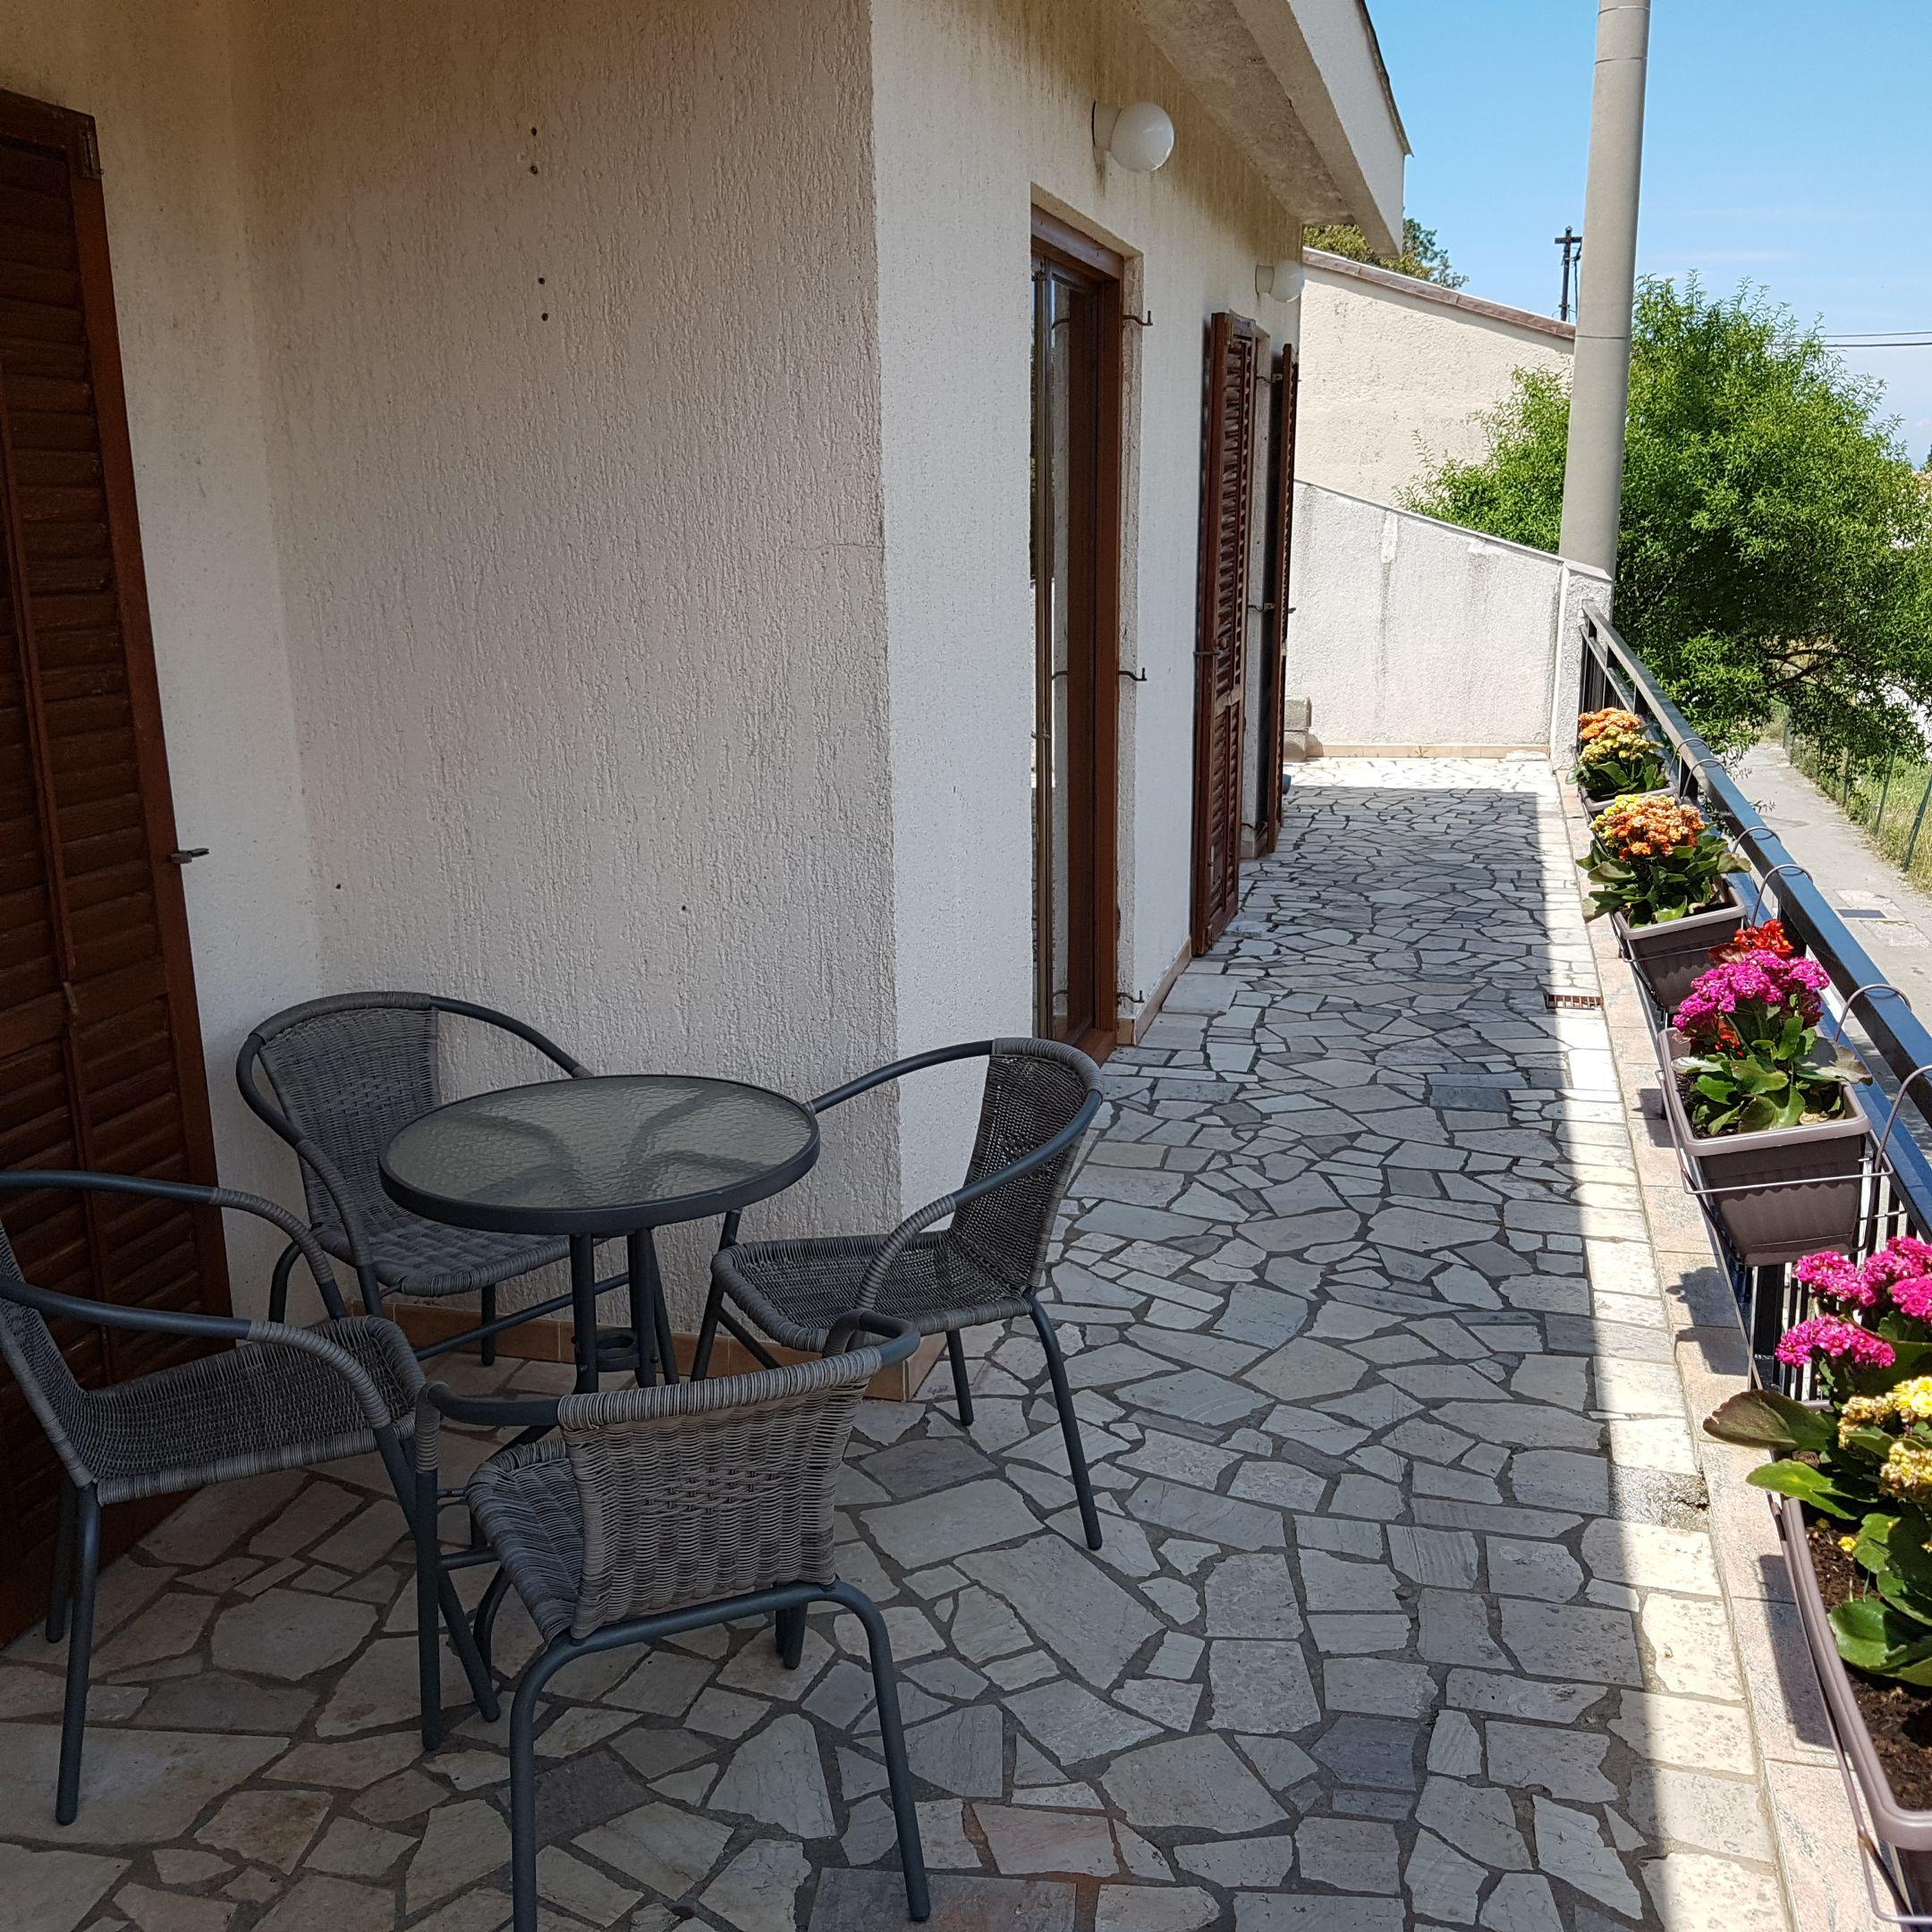 Appartement in Zengg mit Terrasse, Garten und Gril Ferienwohnung in Kroatien